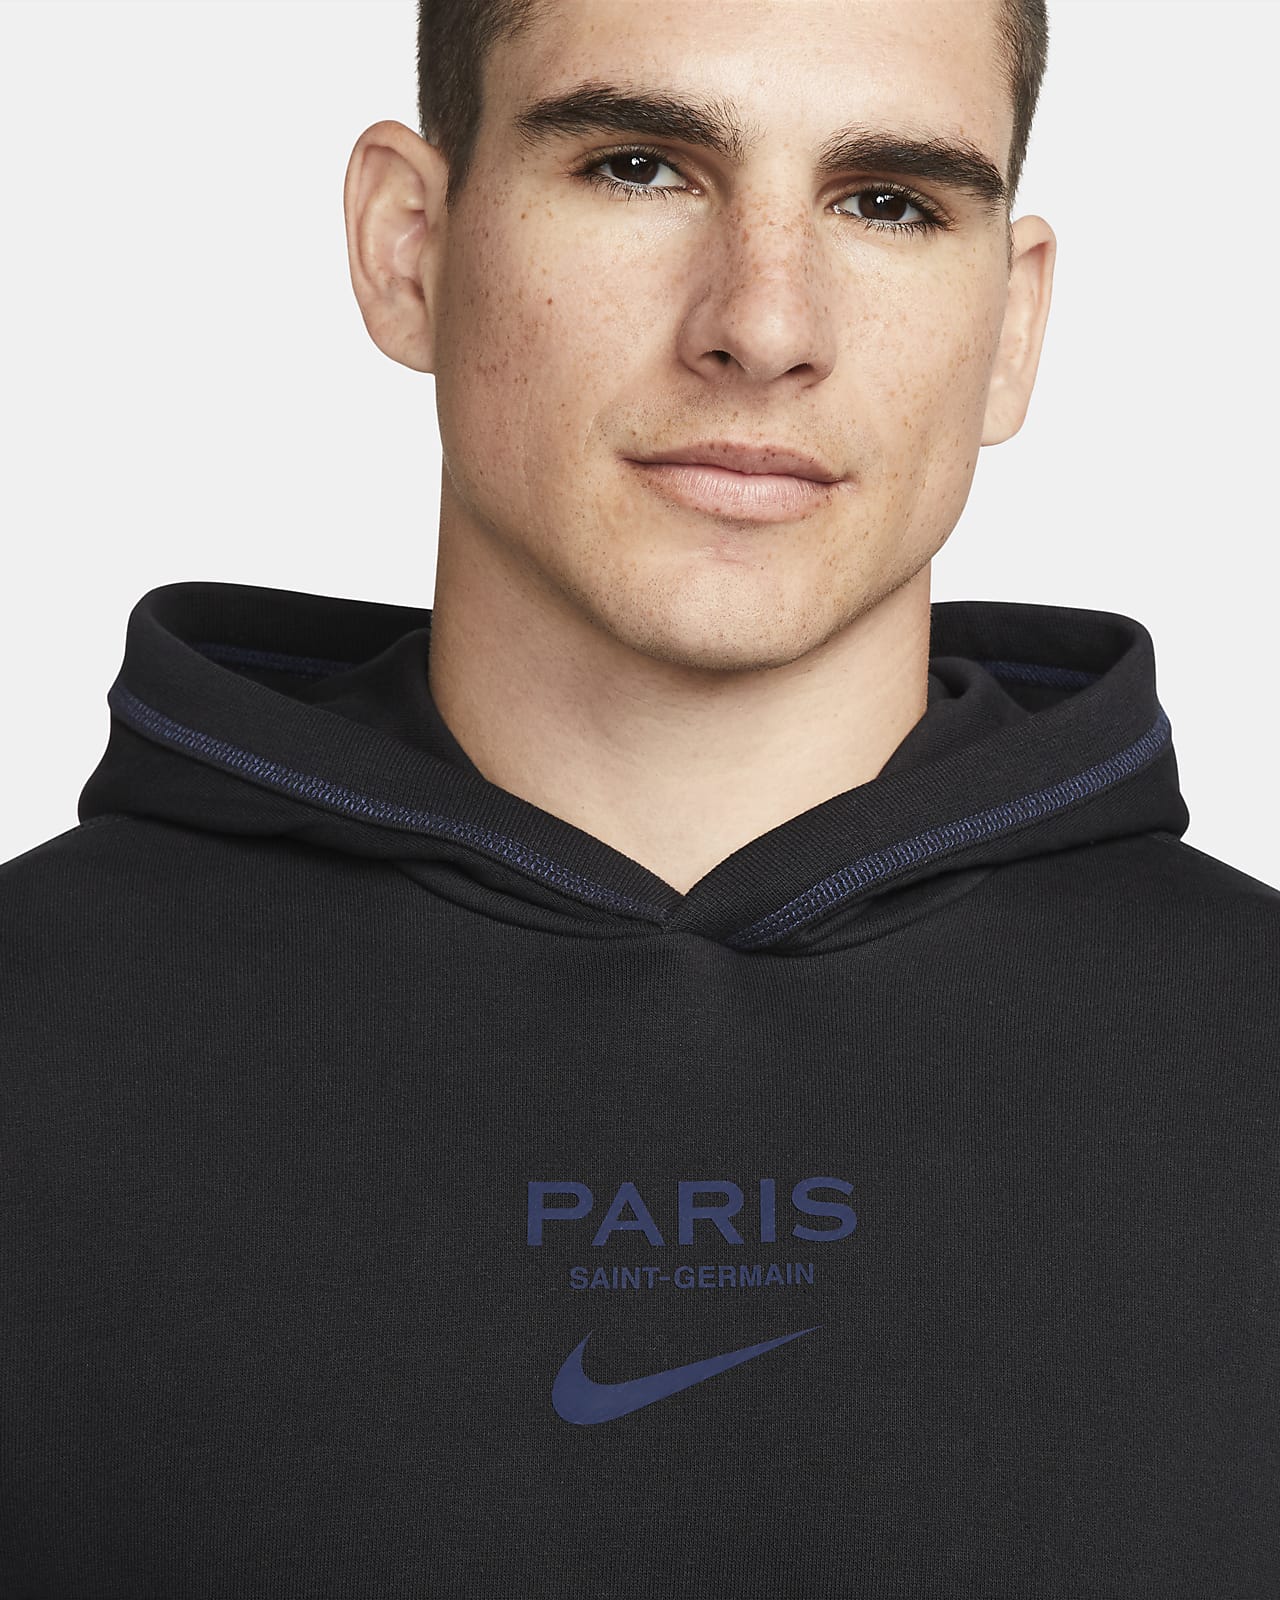 Paris Men's Soccer Nike.com